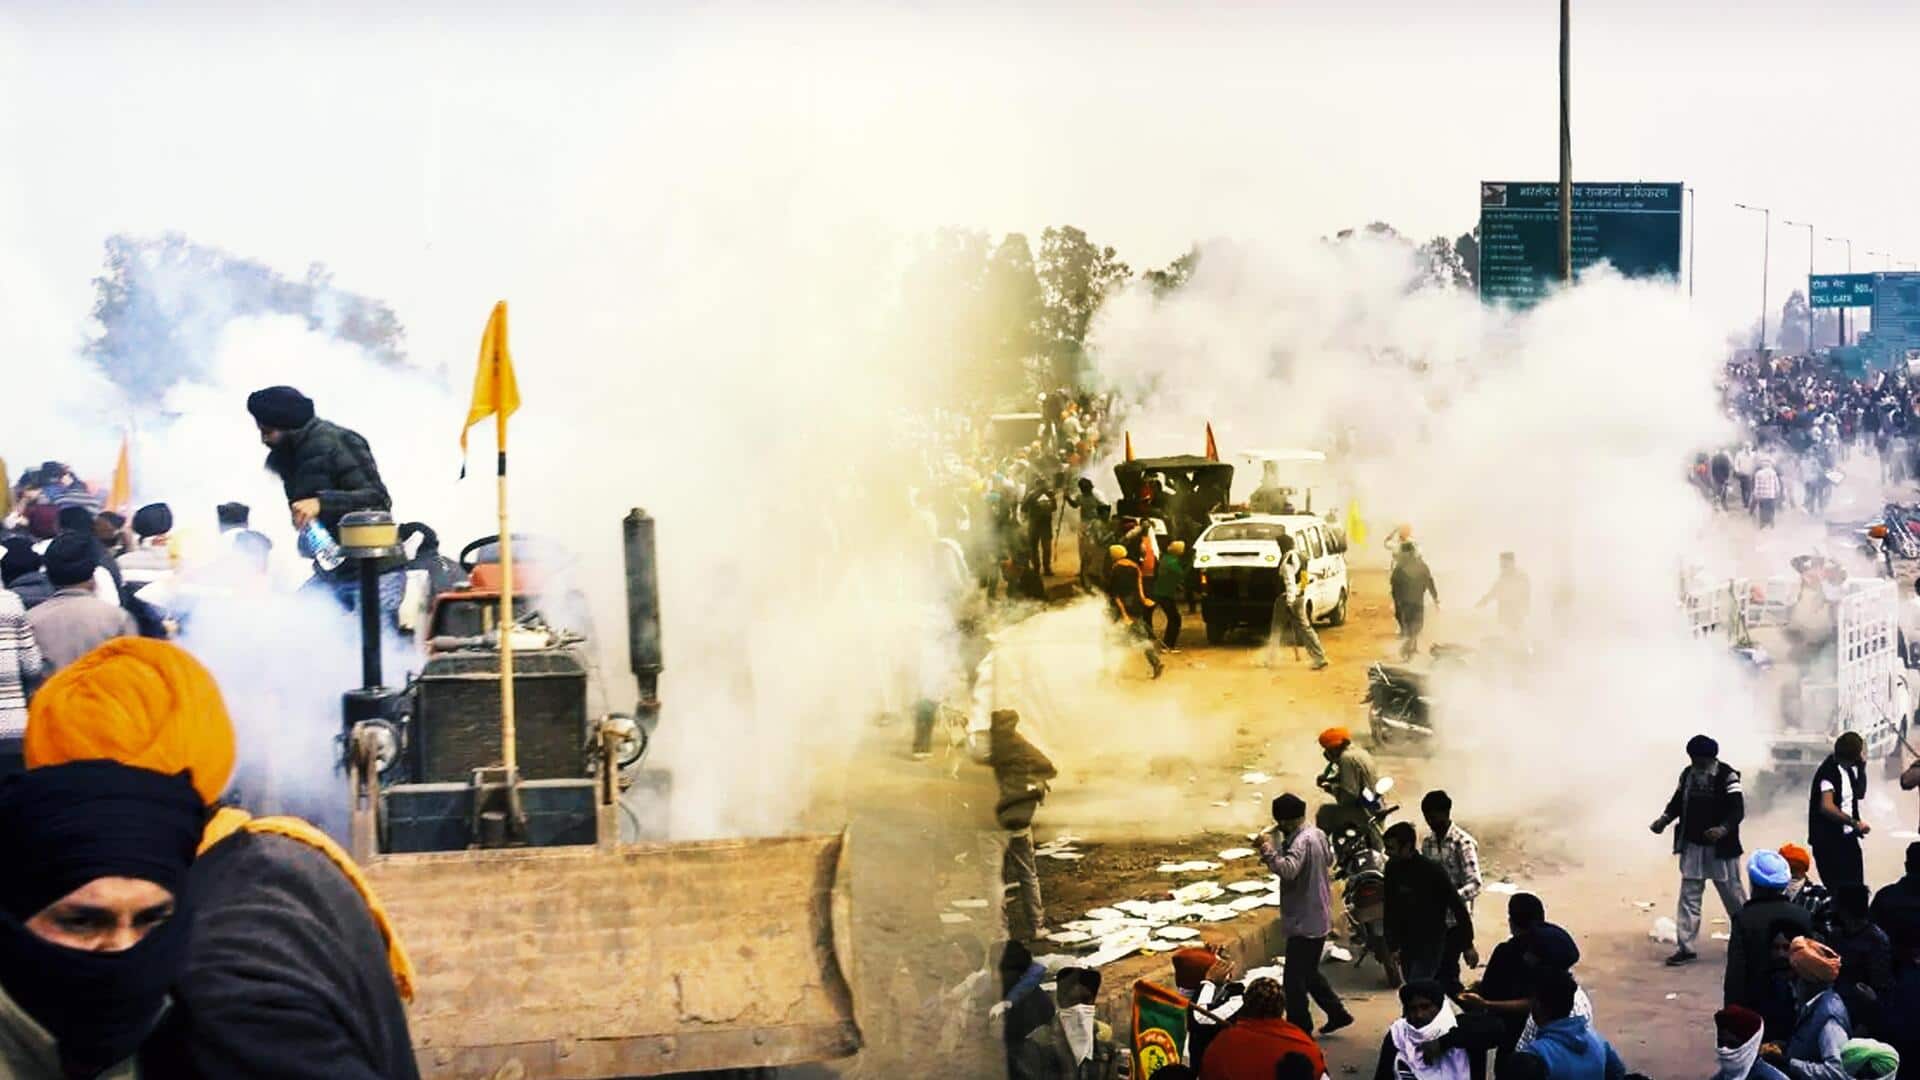 किसानों के 'दिल्ली मार्च' का दूसरा दिन, शंभू बॉर्डर पर फिर बरसे आंसू गैस के गोले